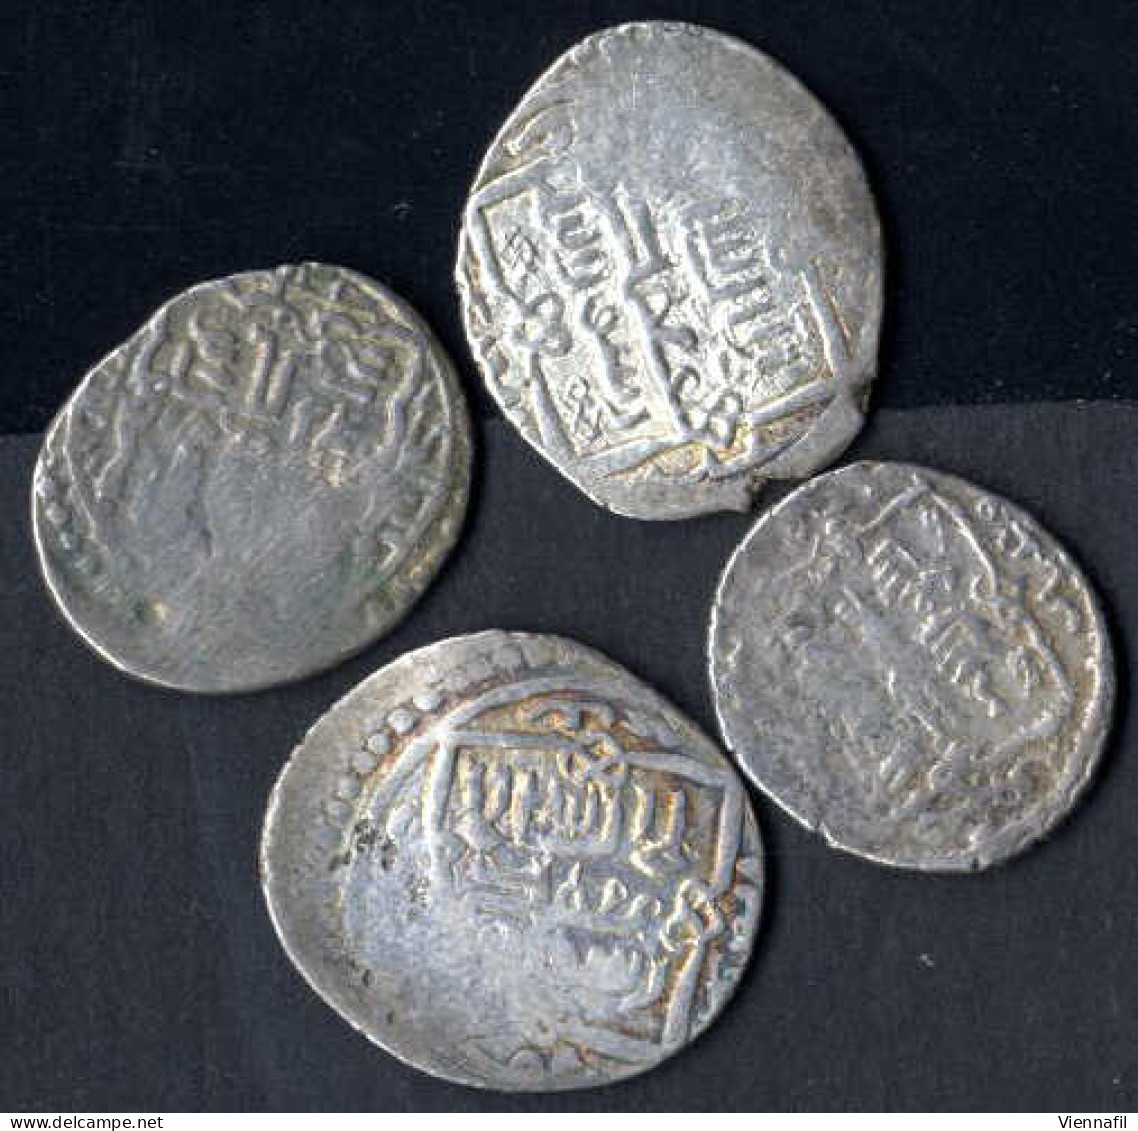 Sülaiman Khan, 740-744AH 1339-1343, Doppeldirham Silber, 741-744 Hisn, BMC Typ 319 332ff, Schön - Sehr Schön, 14 Stück - Islamische Münzen